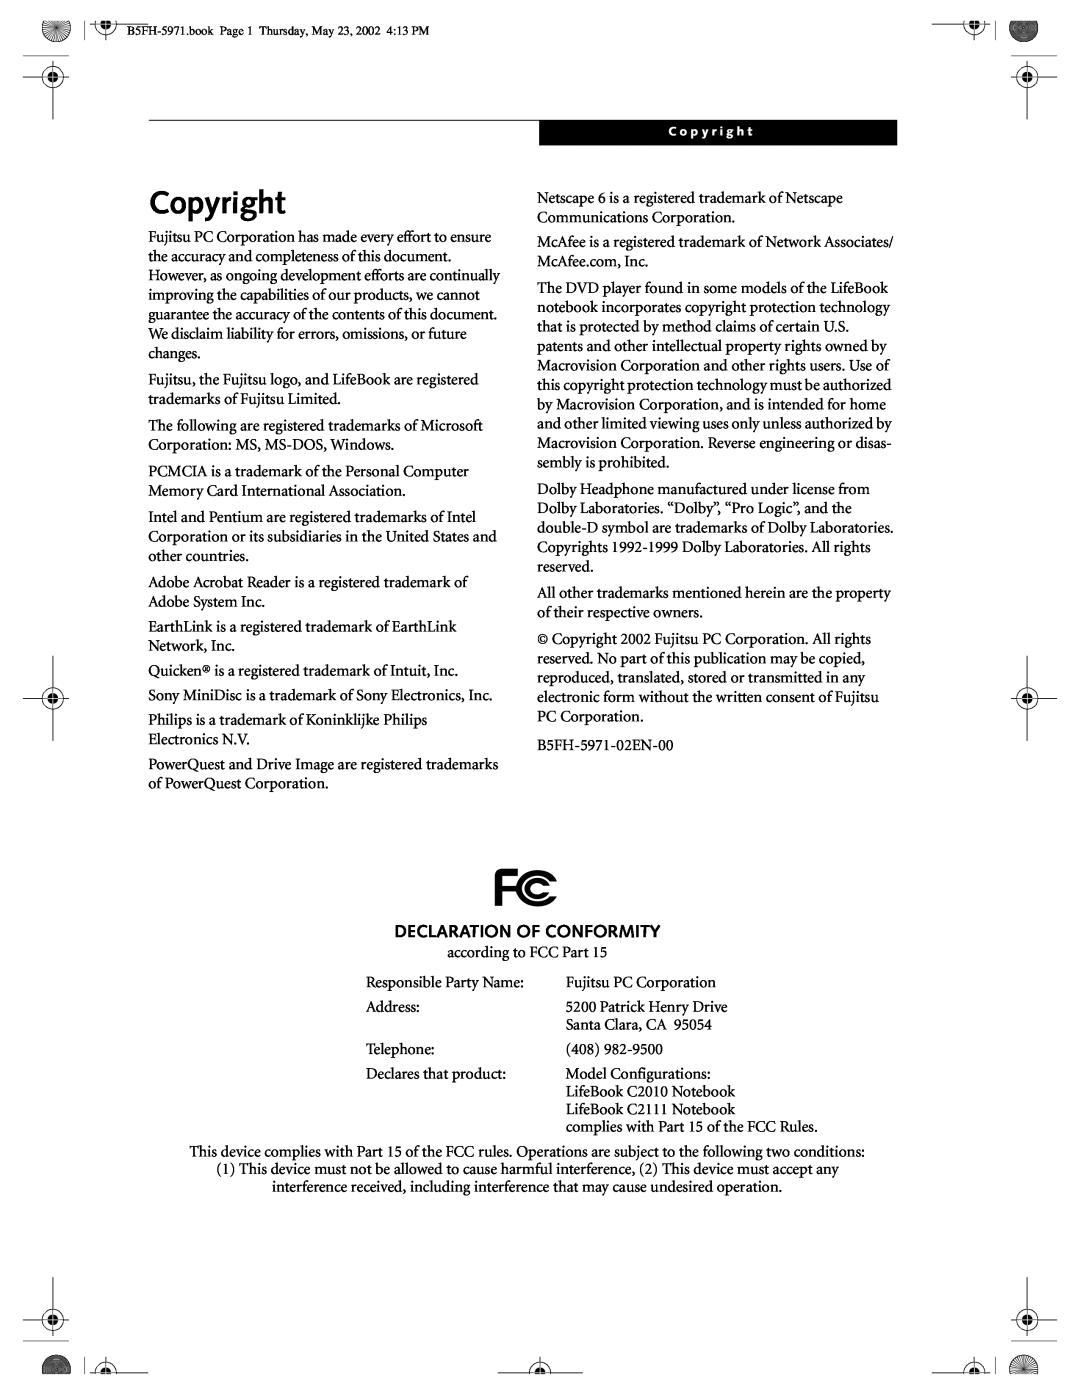 Fujitsu C2010, C2111 manual Copyright, Declaration Of Conformity 